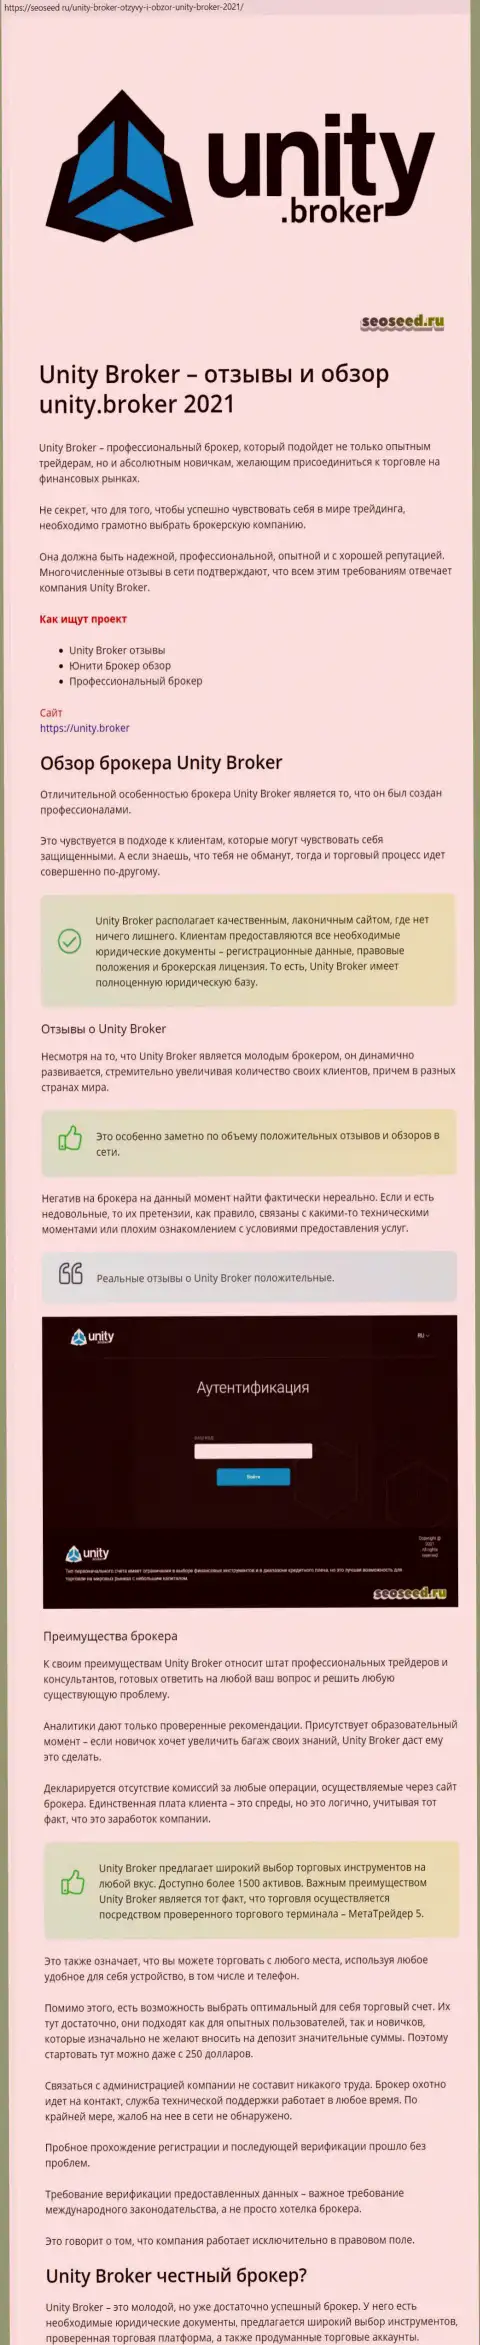 Данные о Forex компании Unity Broker на web-сайте seoseed ru